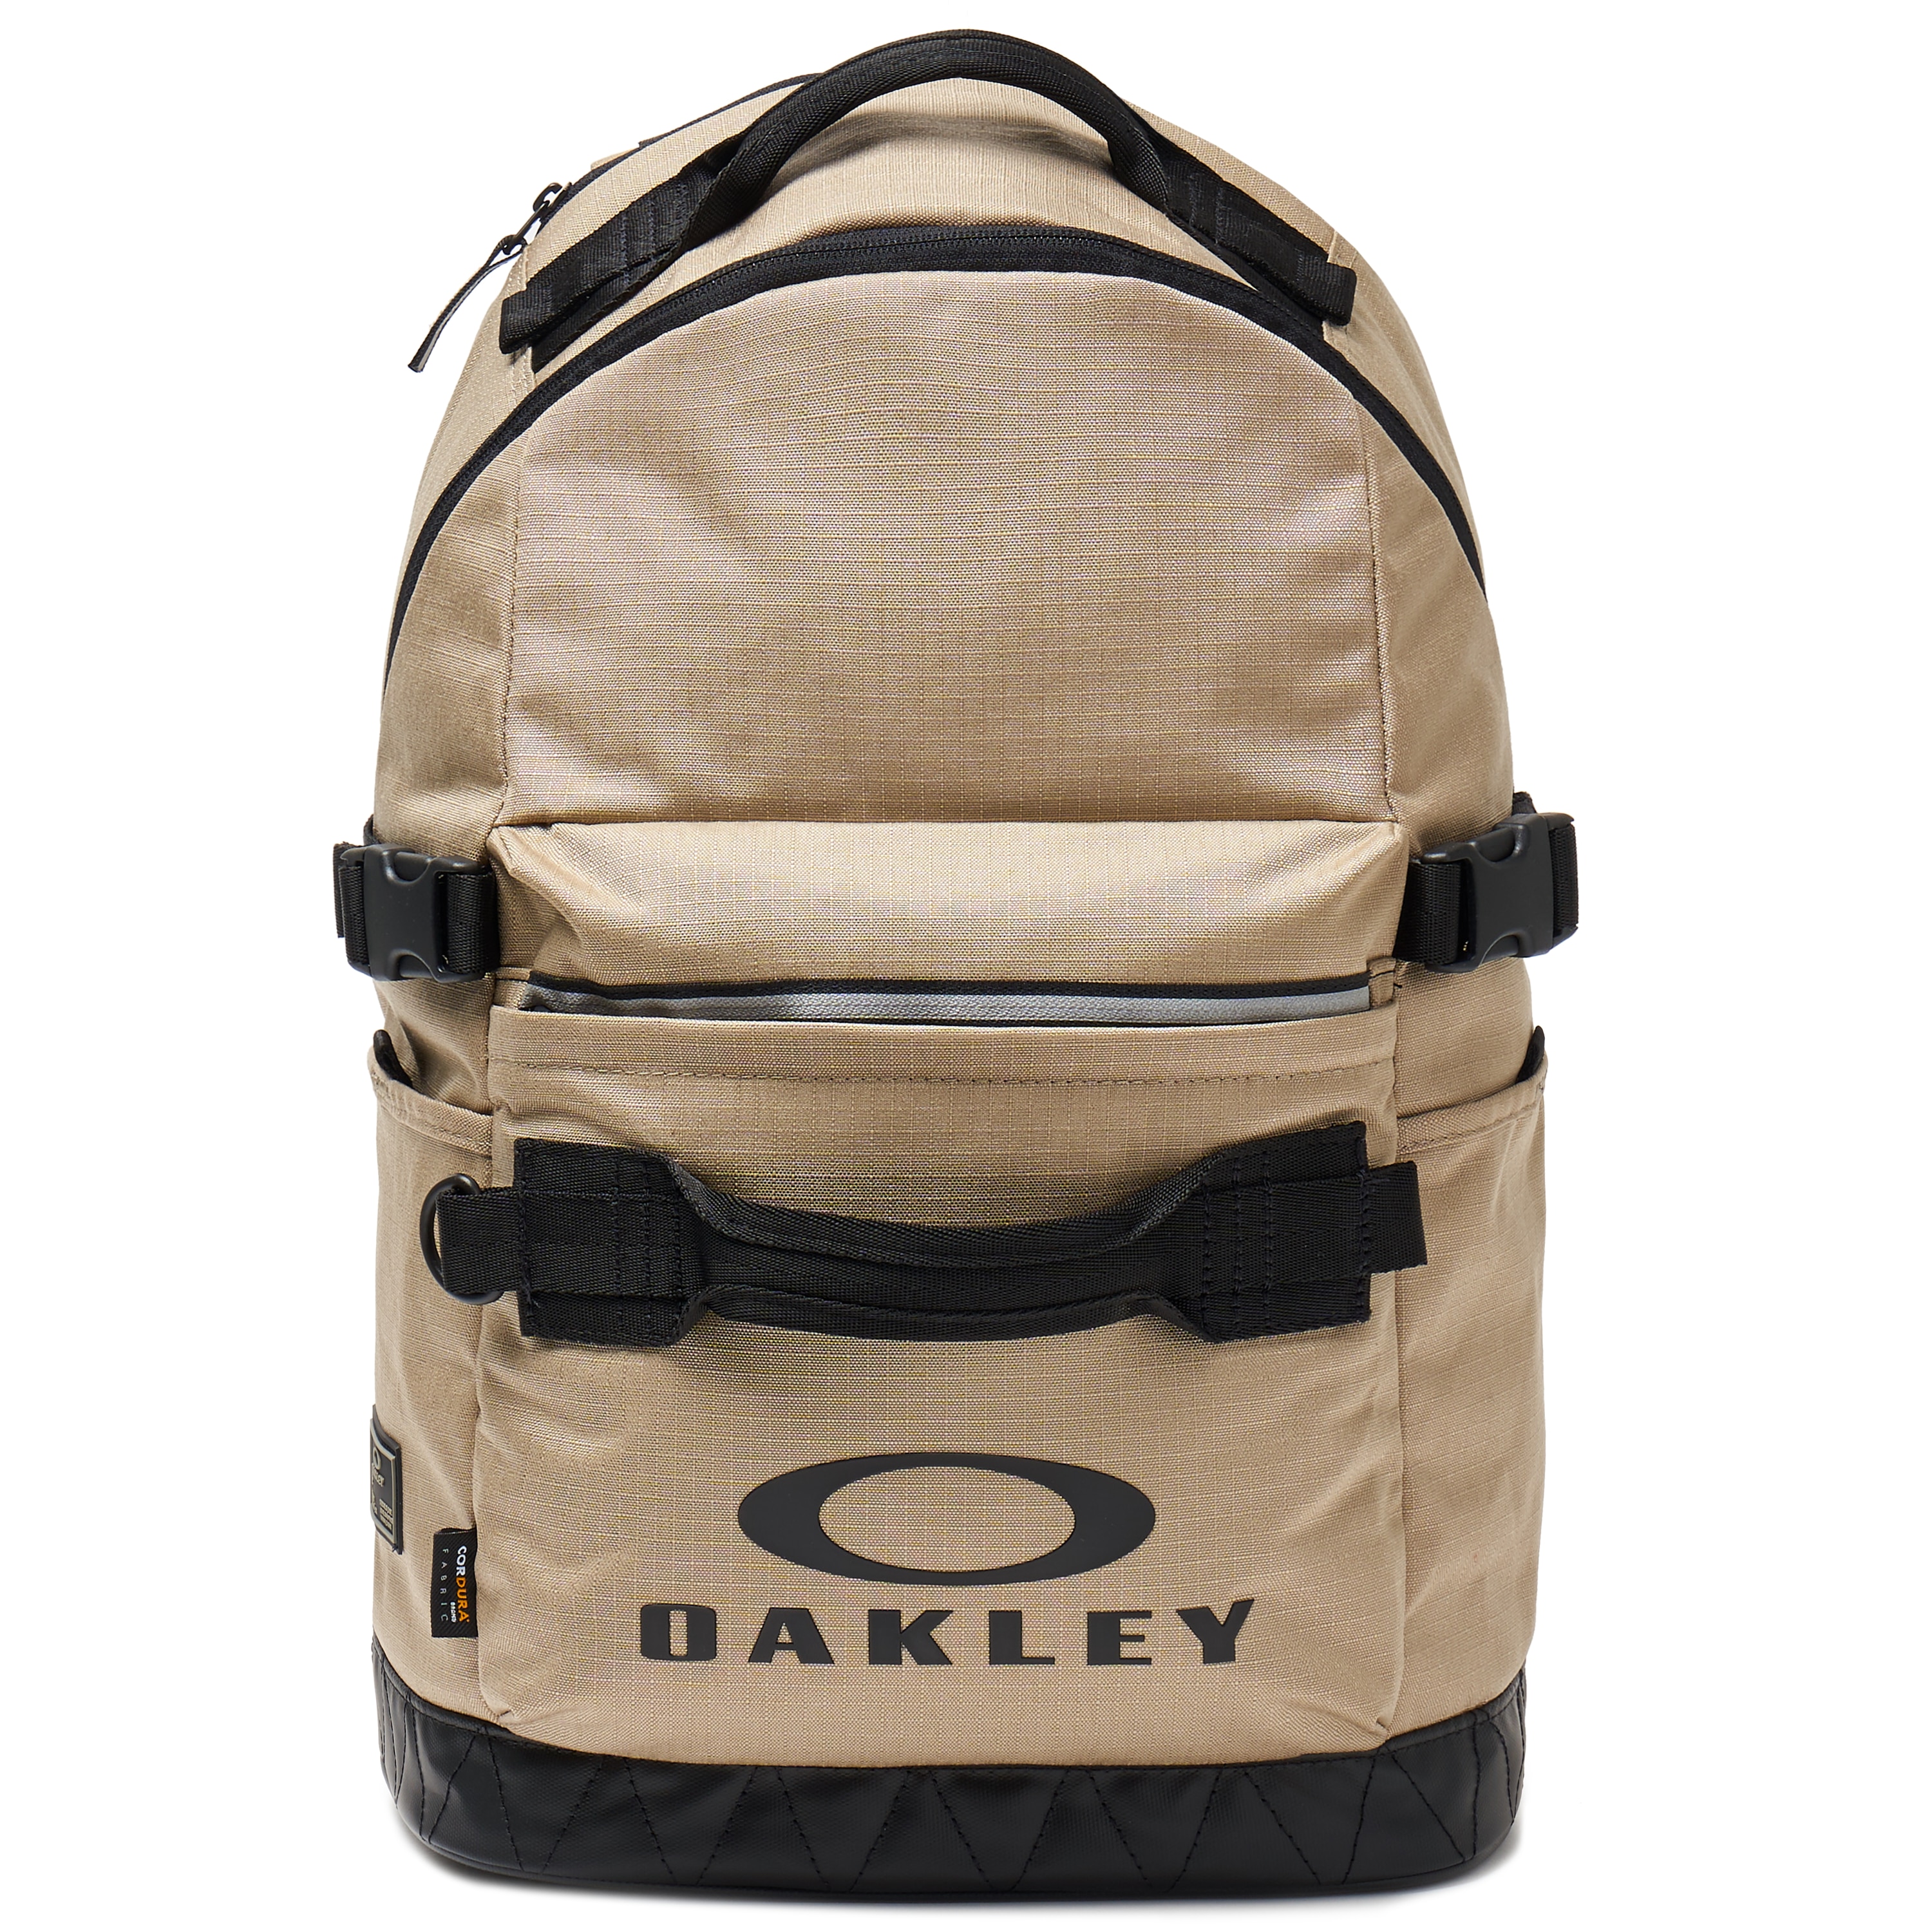 Oakley Utility Backpack - Rye - 921515 